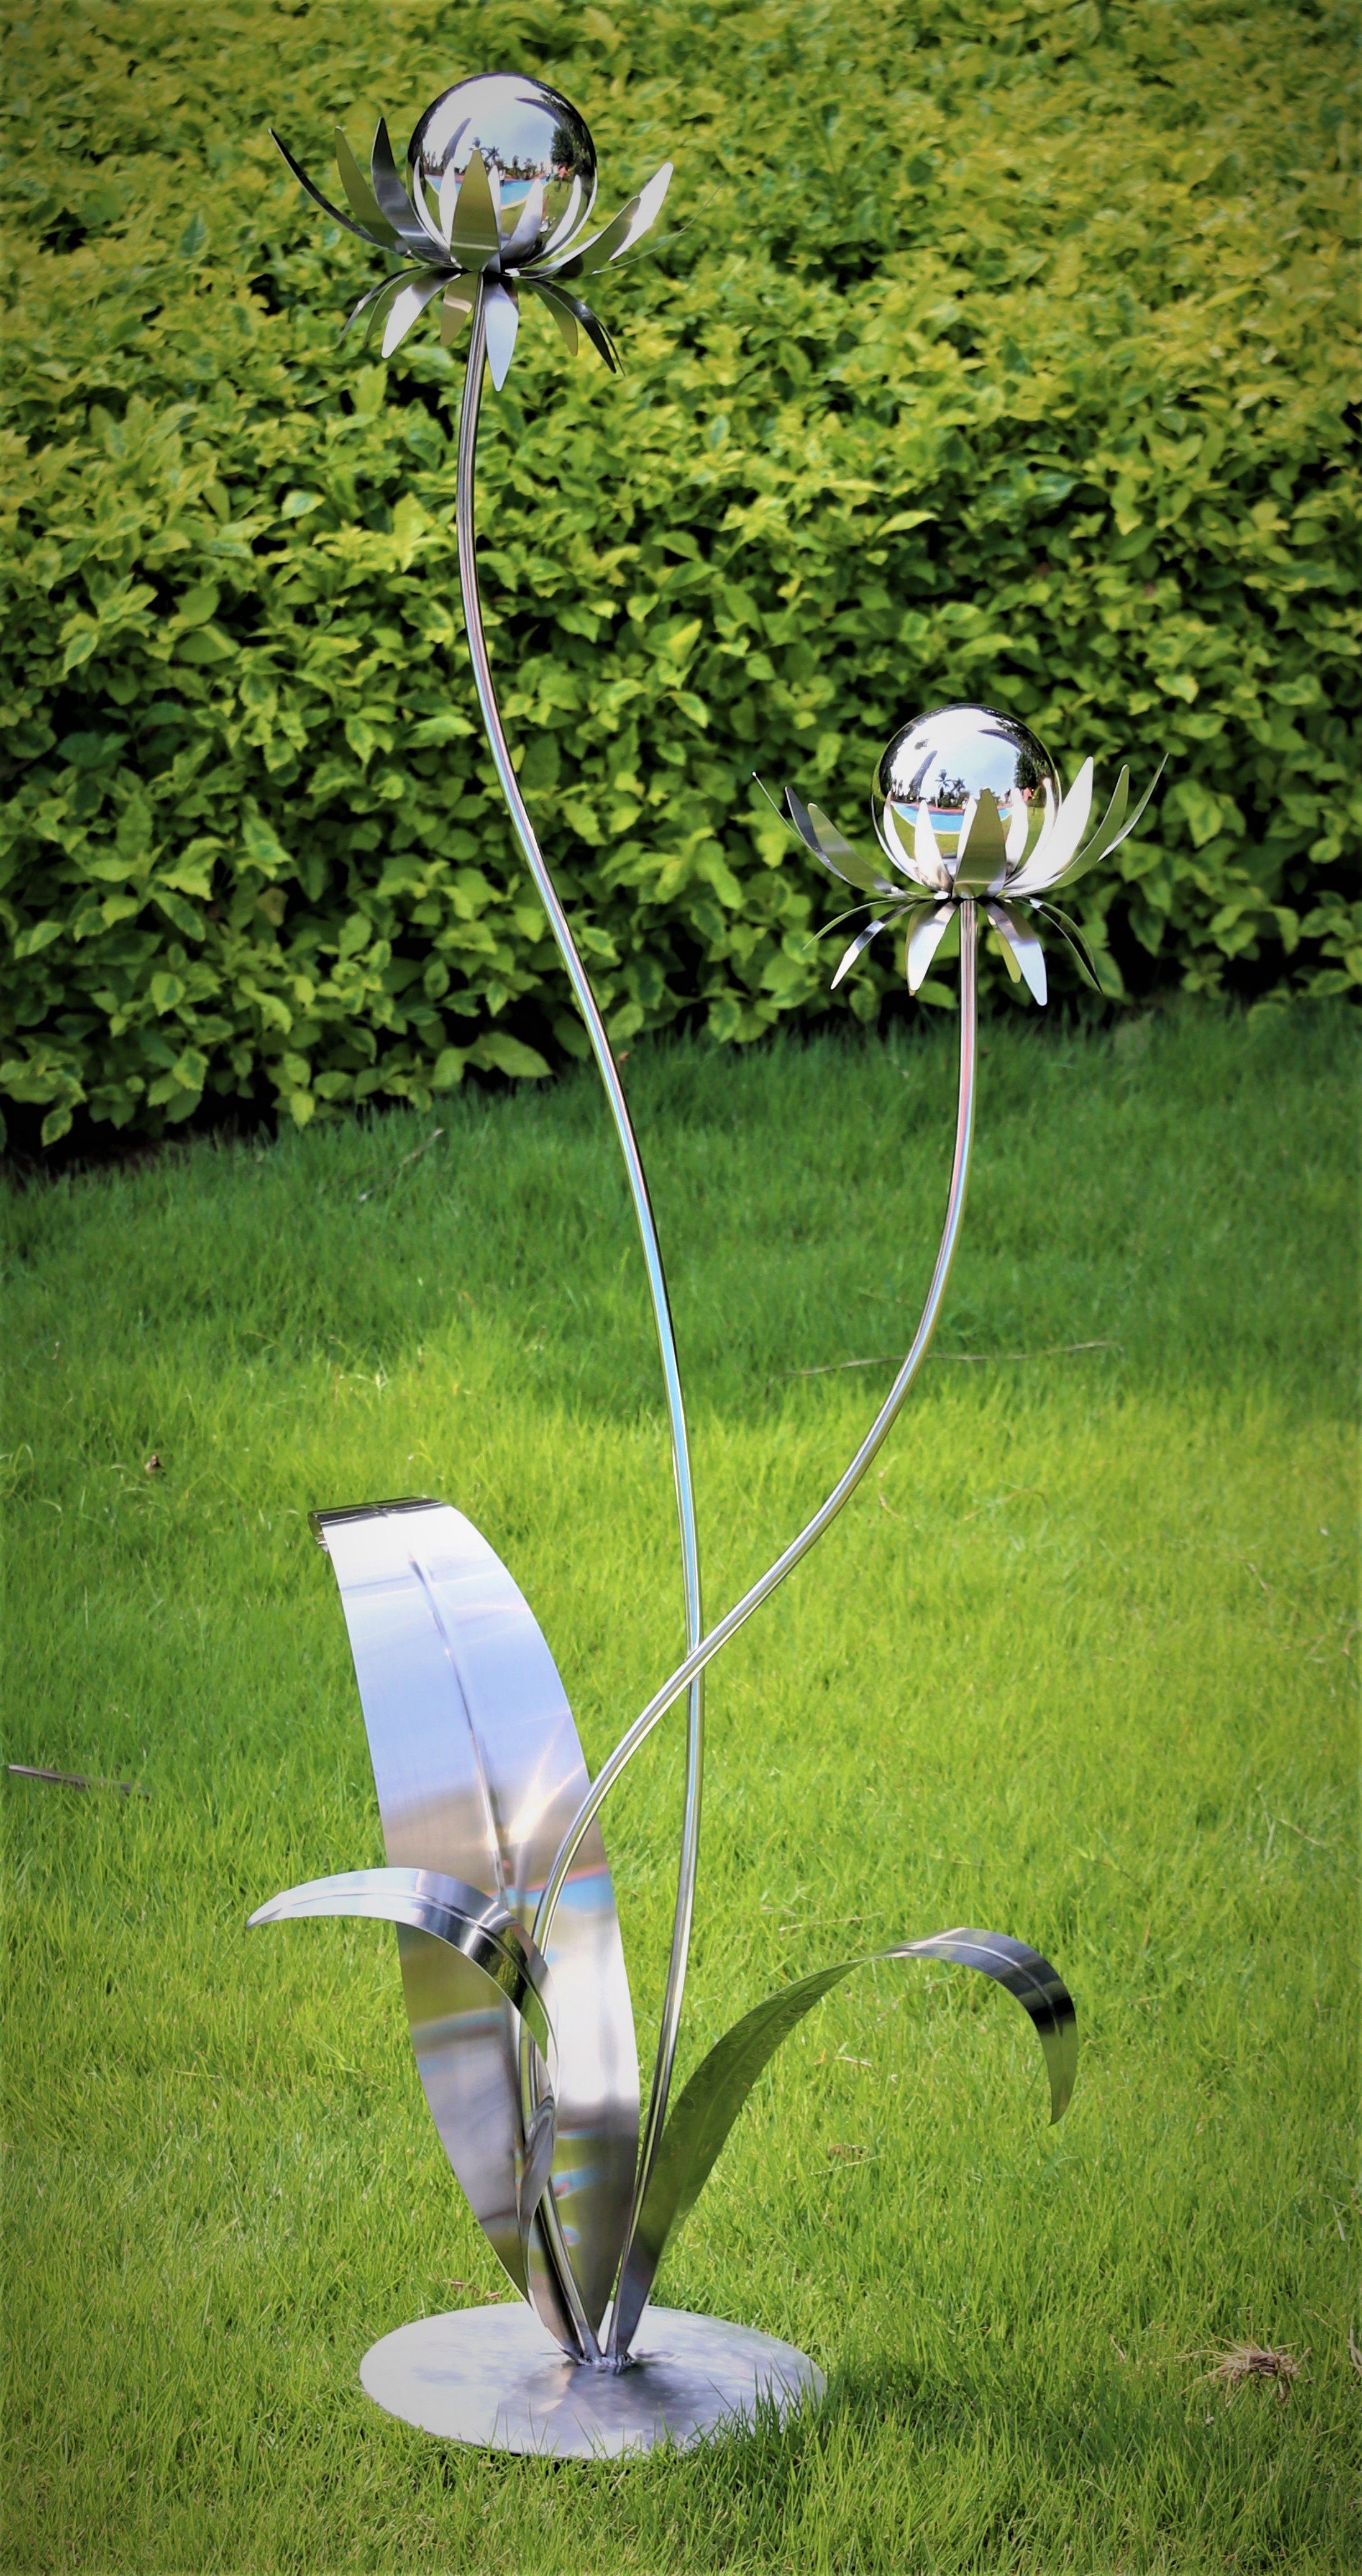 Jürgen Bocker Garten-Ambiente Gartenstecker »Skulptur Blume Milano  Edelstahl 120 cm Kugel Edelstahl poliert mit Standfuß Deko Gartendeko«  online kaufen | OTTO